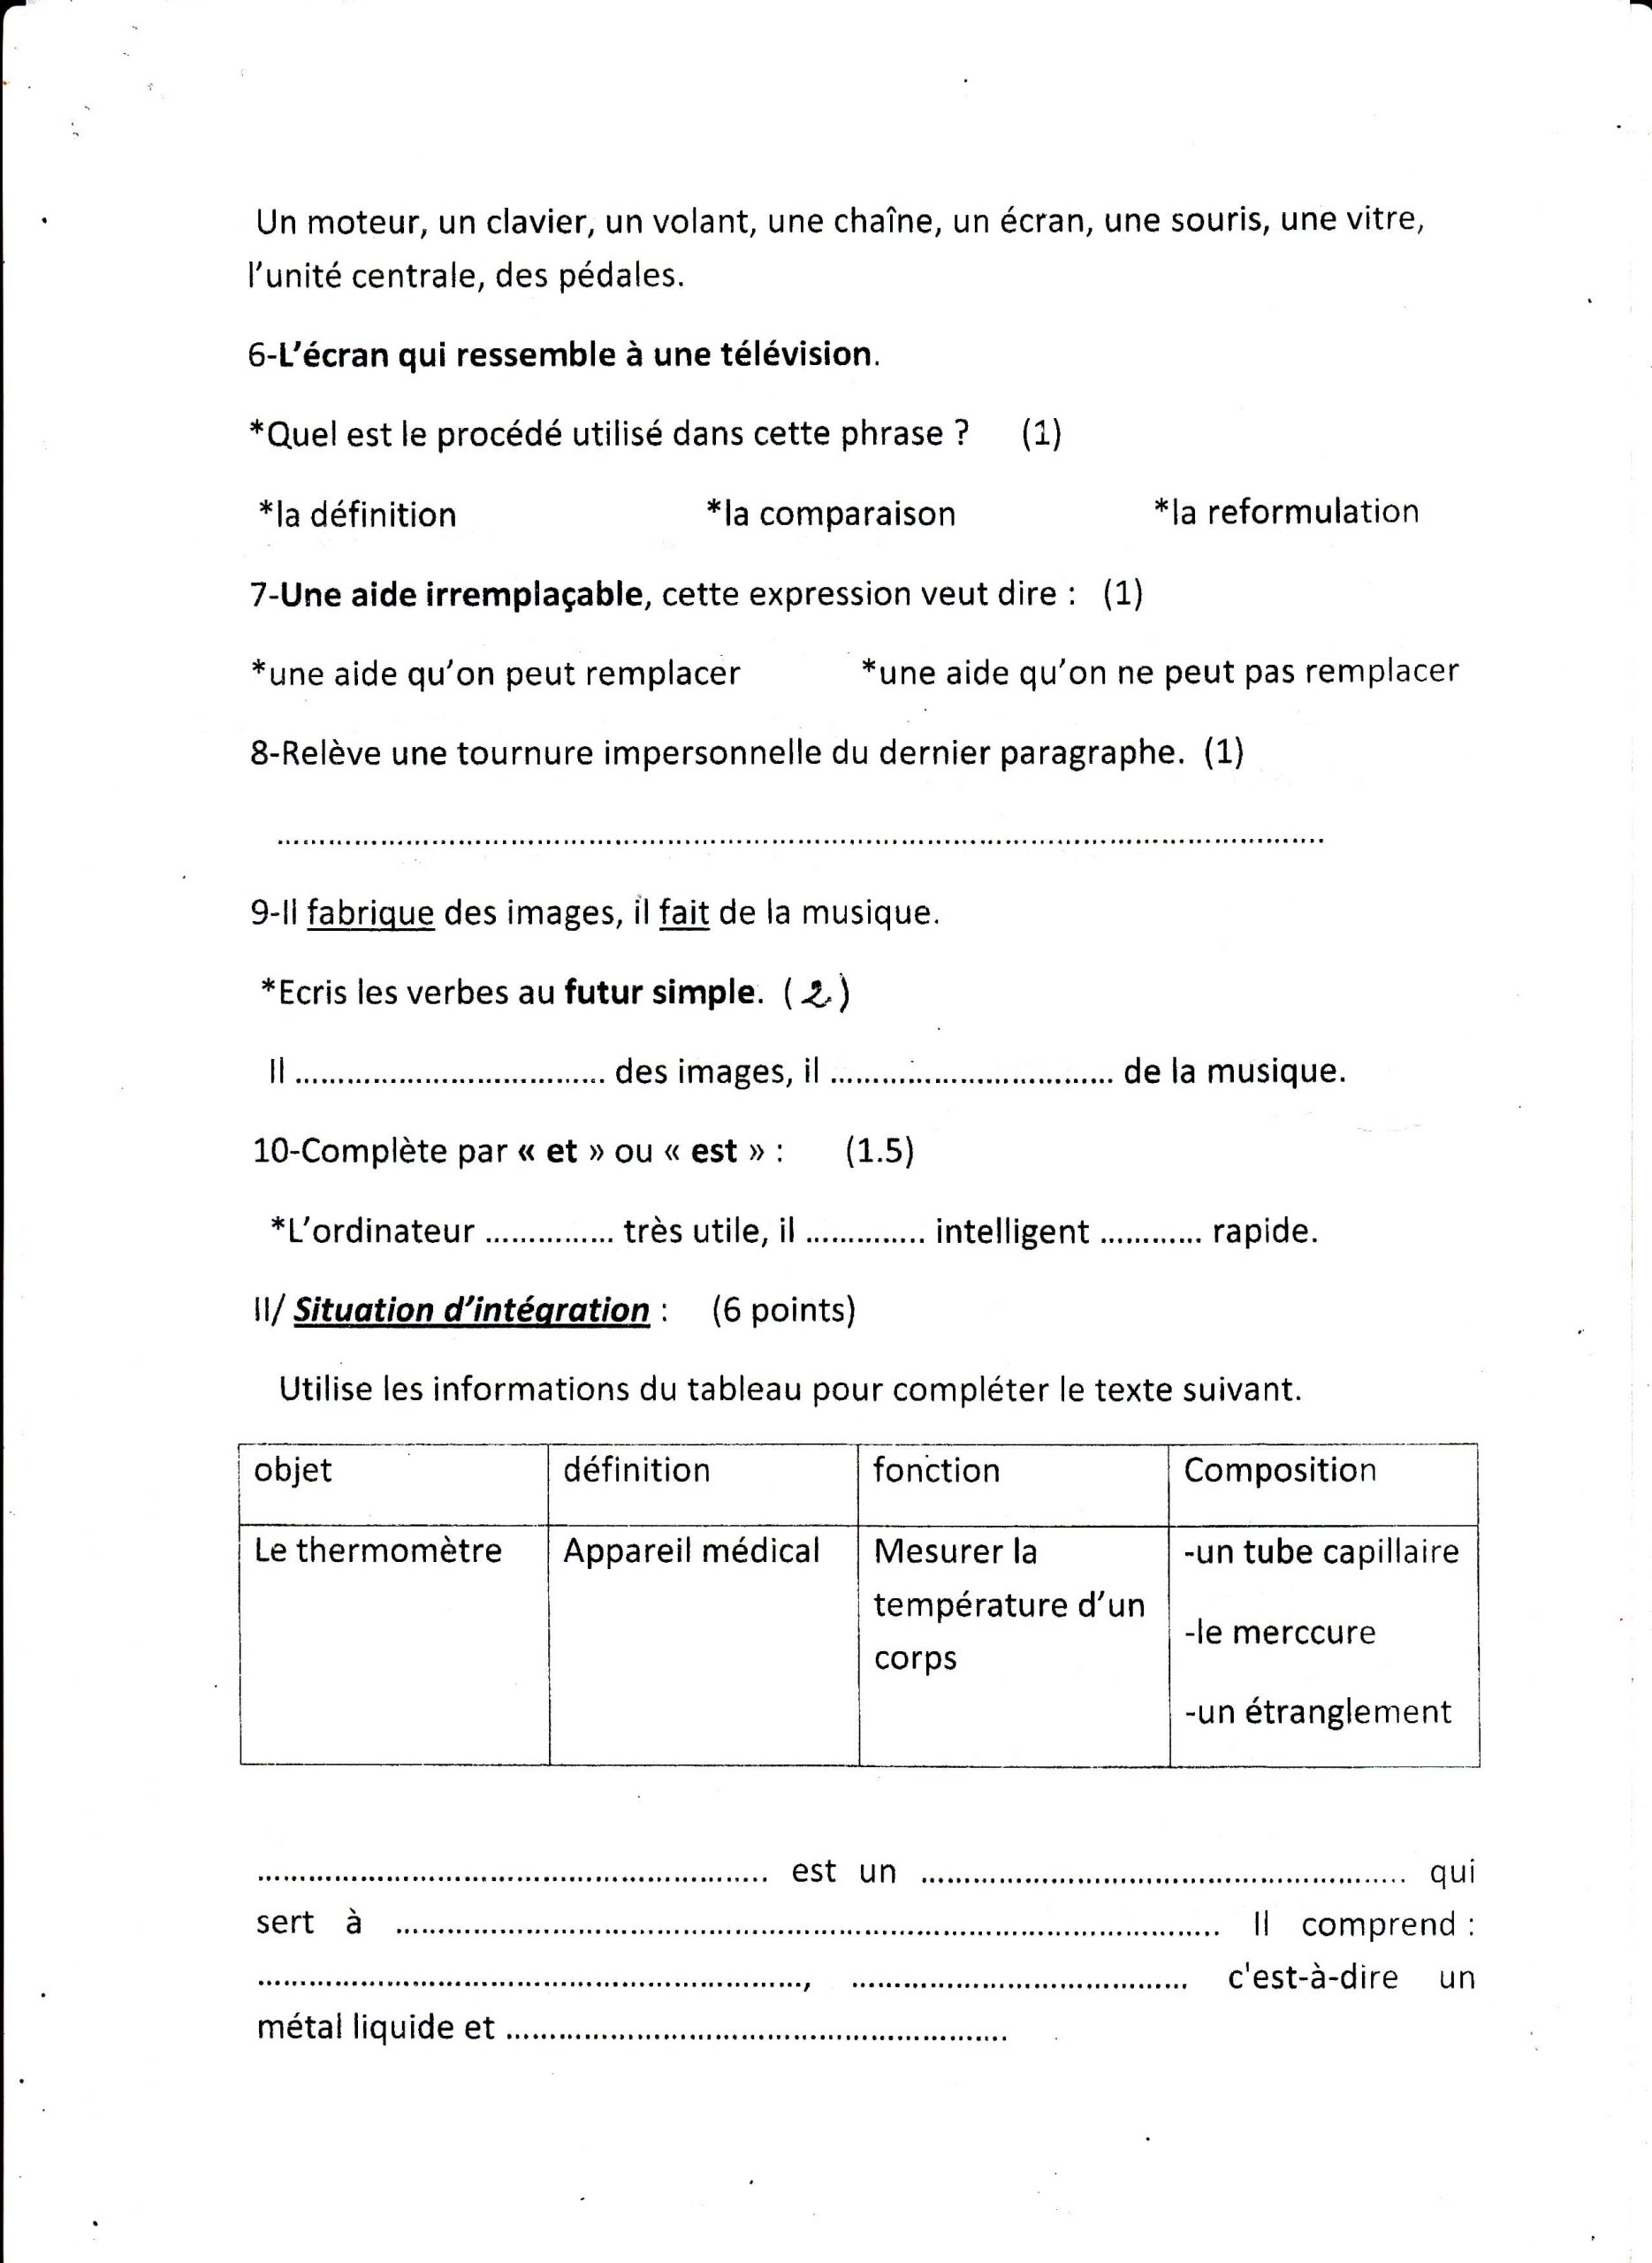 اختبار الفصل الثالث في اللغة الفرنسية للسنة الأولى متوسط - الموضوع 01